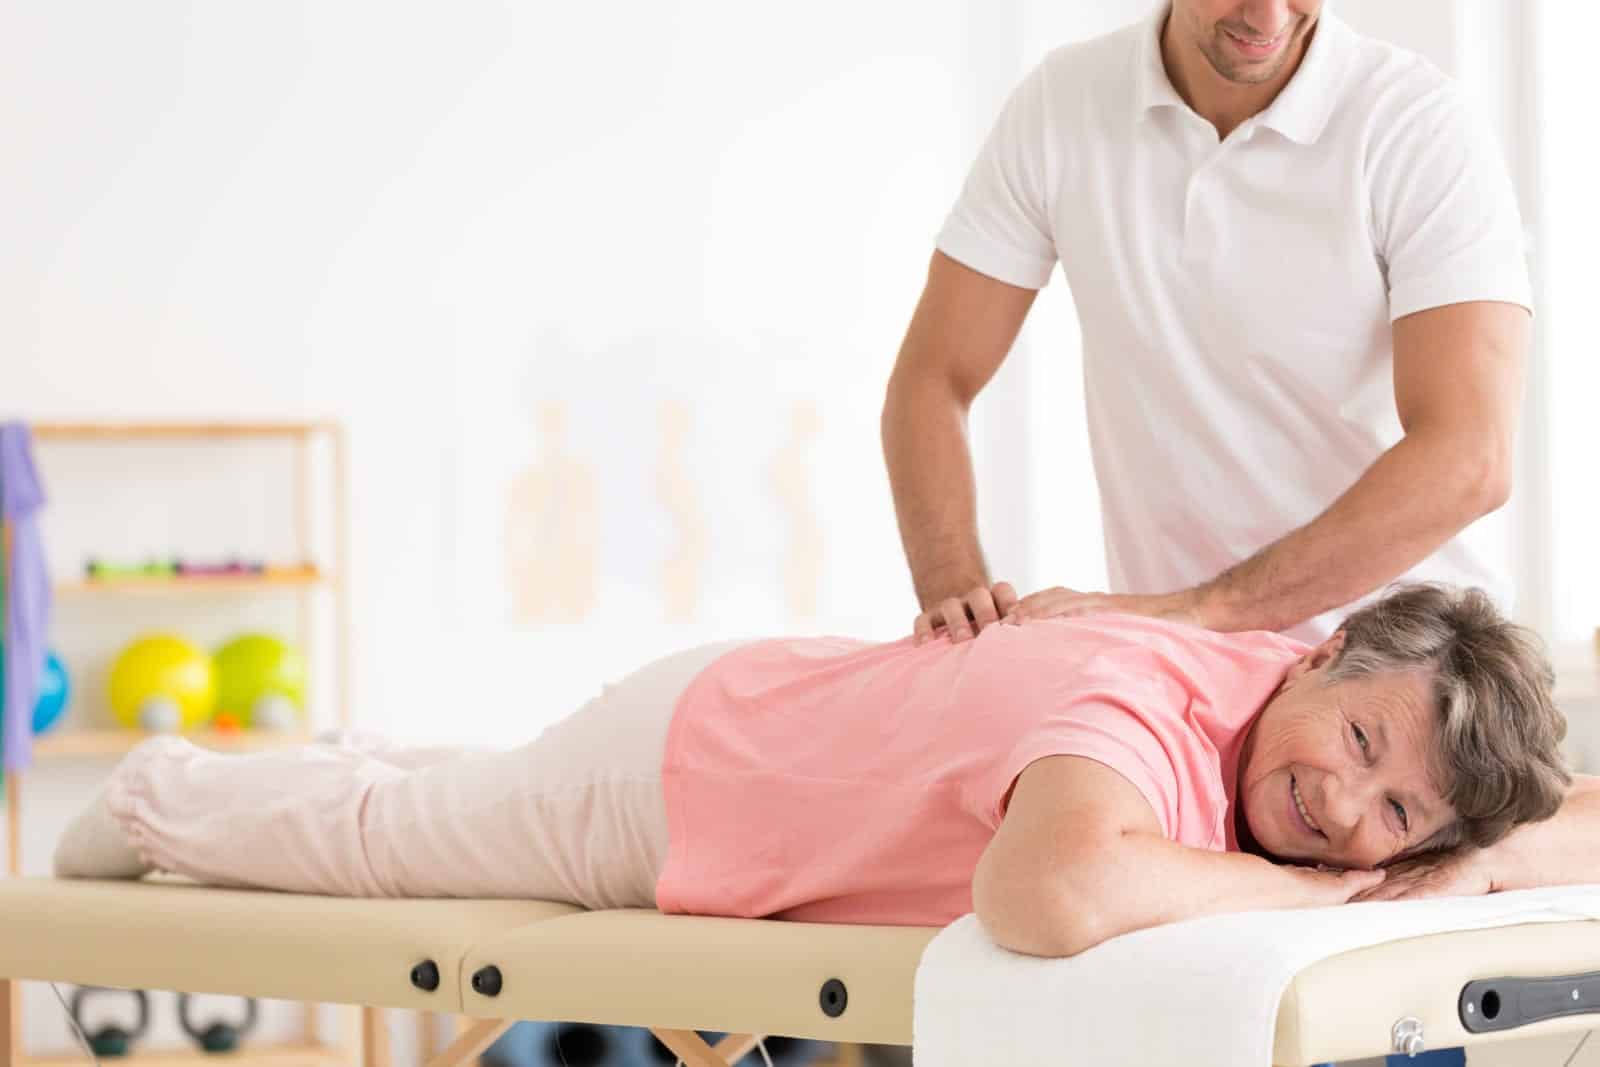 does Medicare cover medical massage